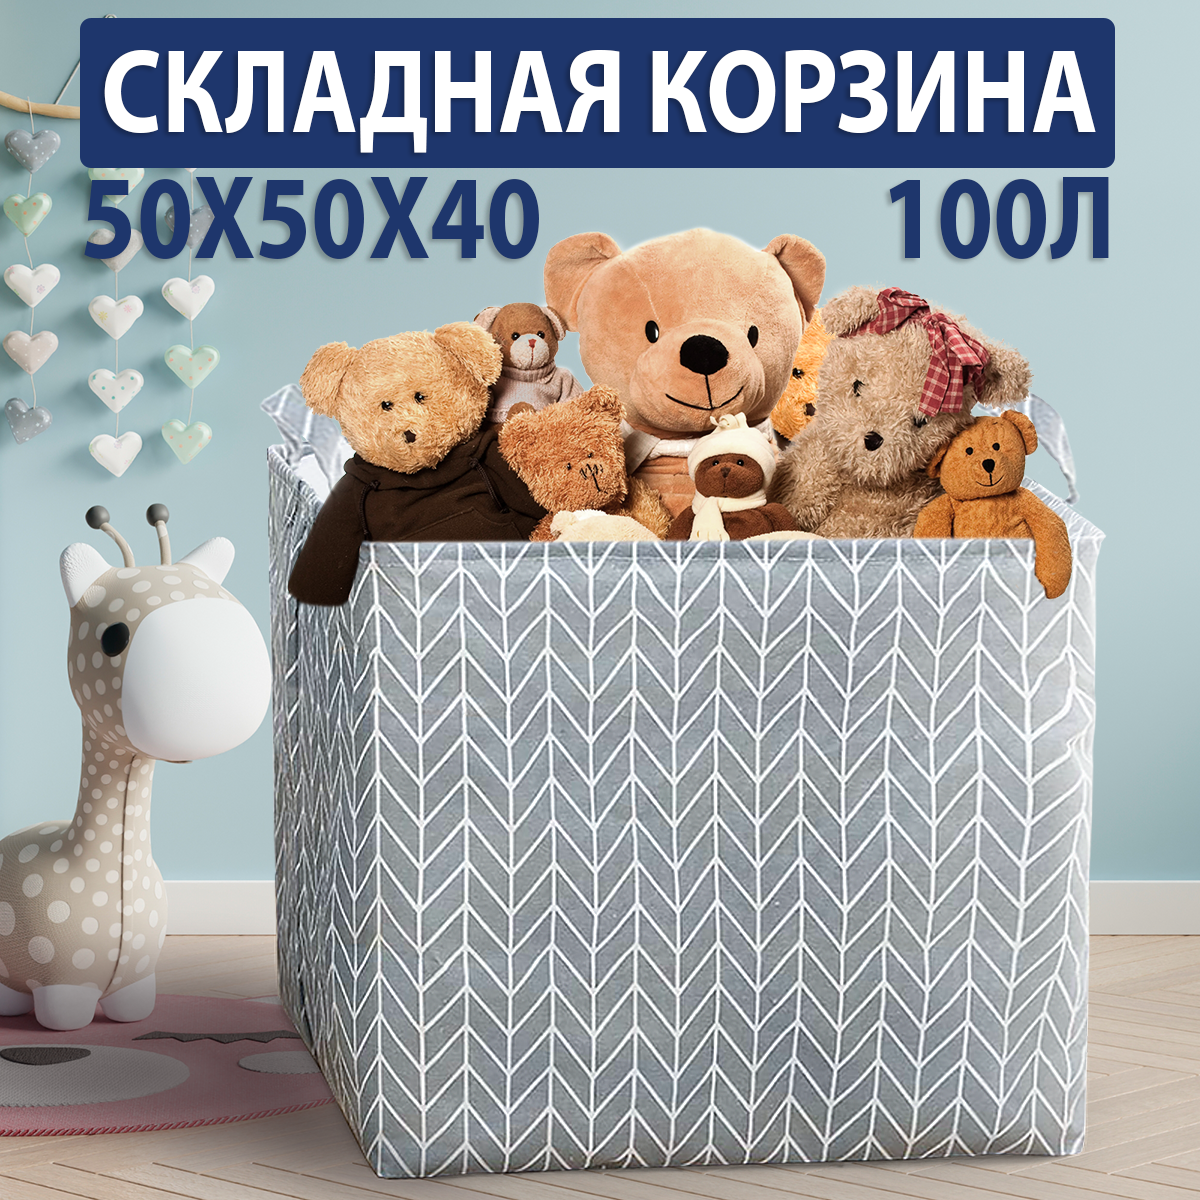 Корзины для игрушек в Бишкеке - Купить по низкой цене % в Кыргызстане ▶️ hb-crm.ru